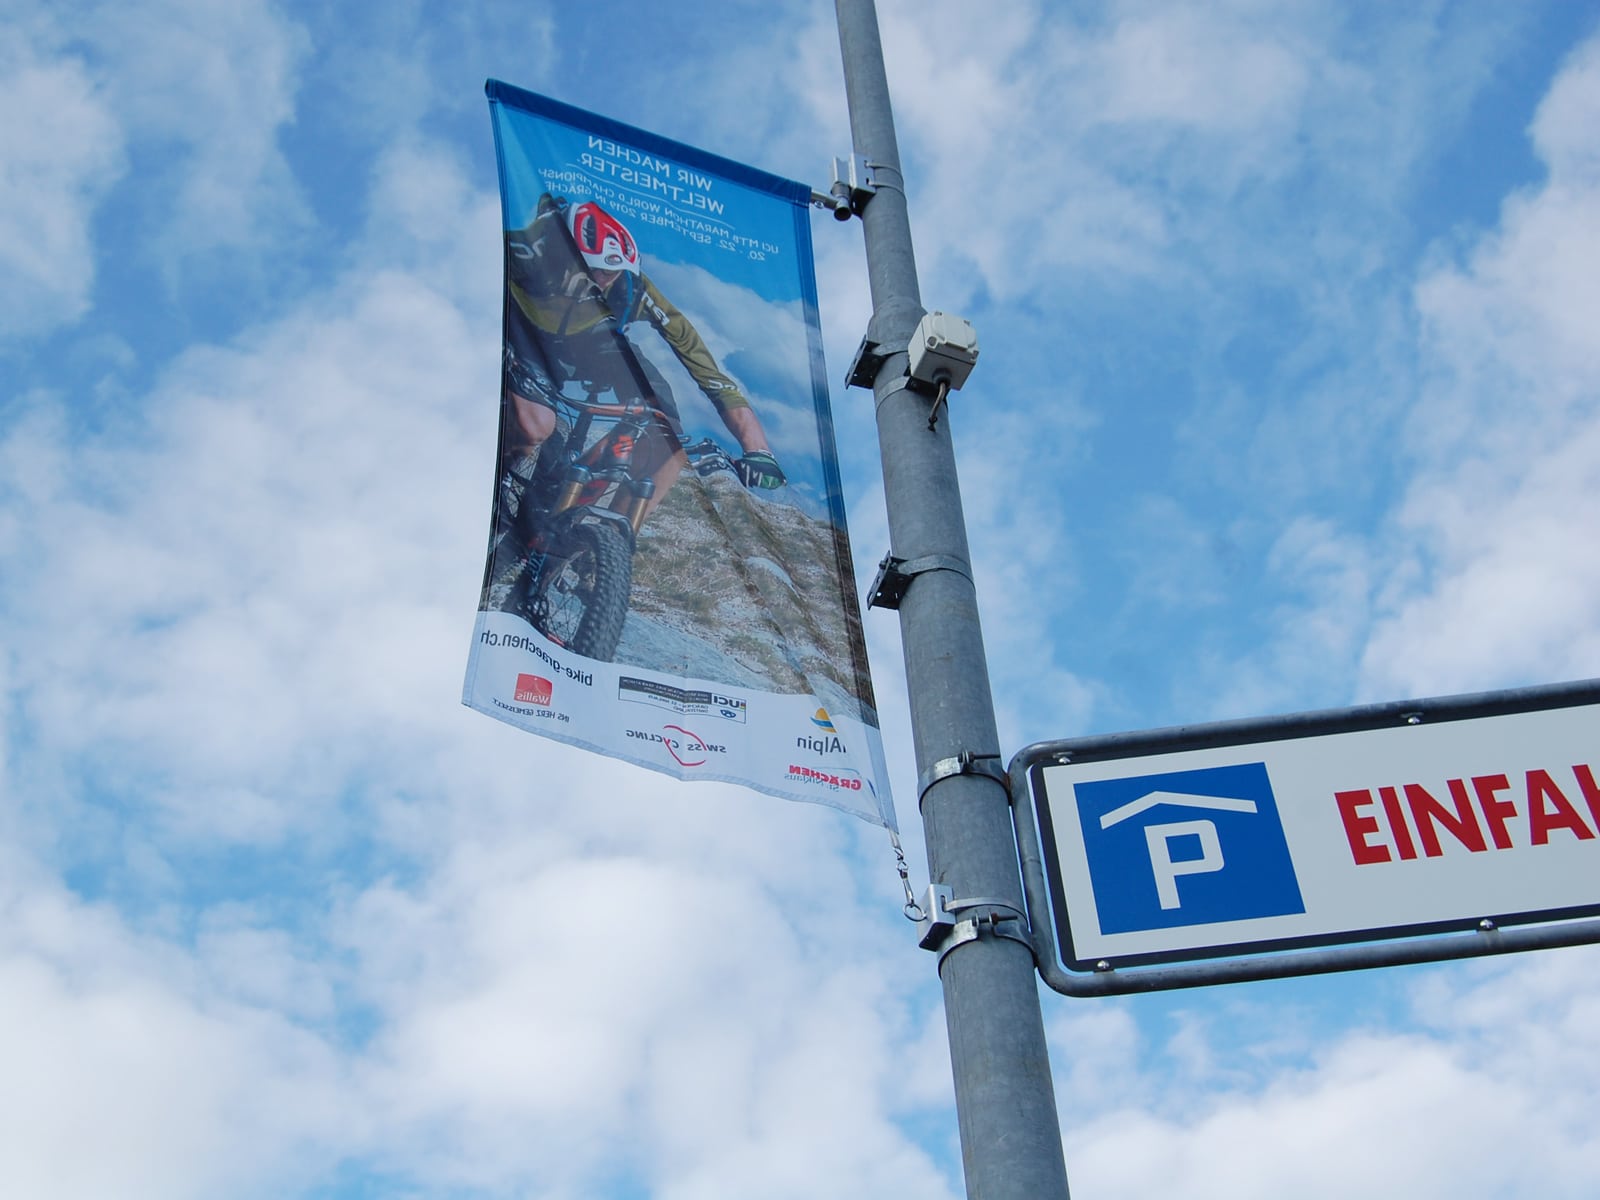 Für die UCI Mountainbike Marathon Weltmeisterschaft in Grächen machte die Walliser Feriendestination mit 60 Kandelaberfahnen von flagprint auf den Bike-Event aufmerksam